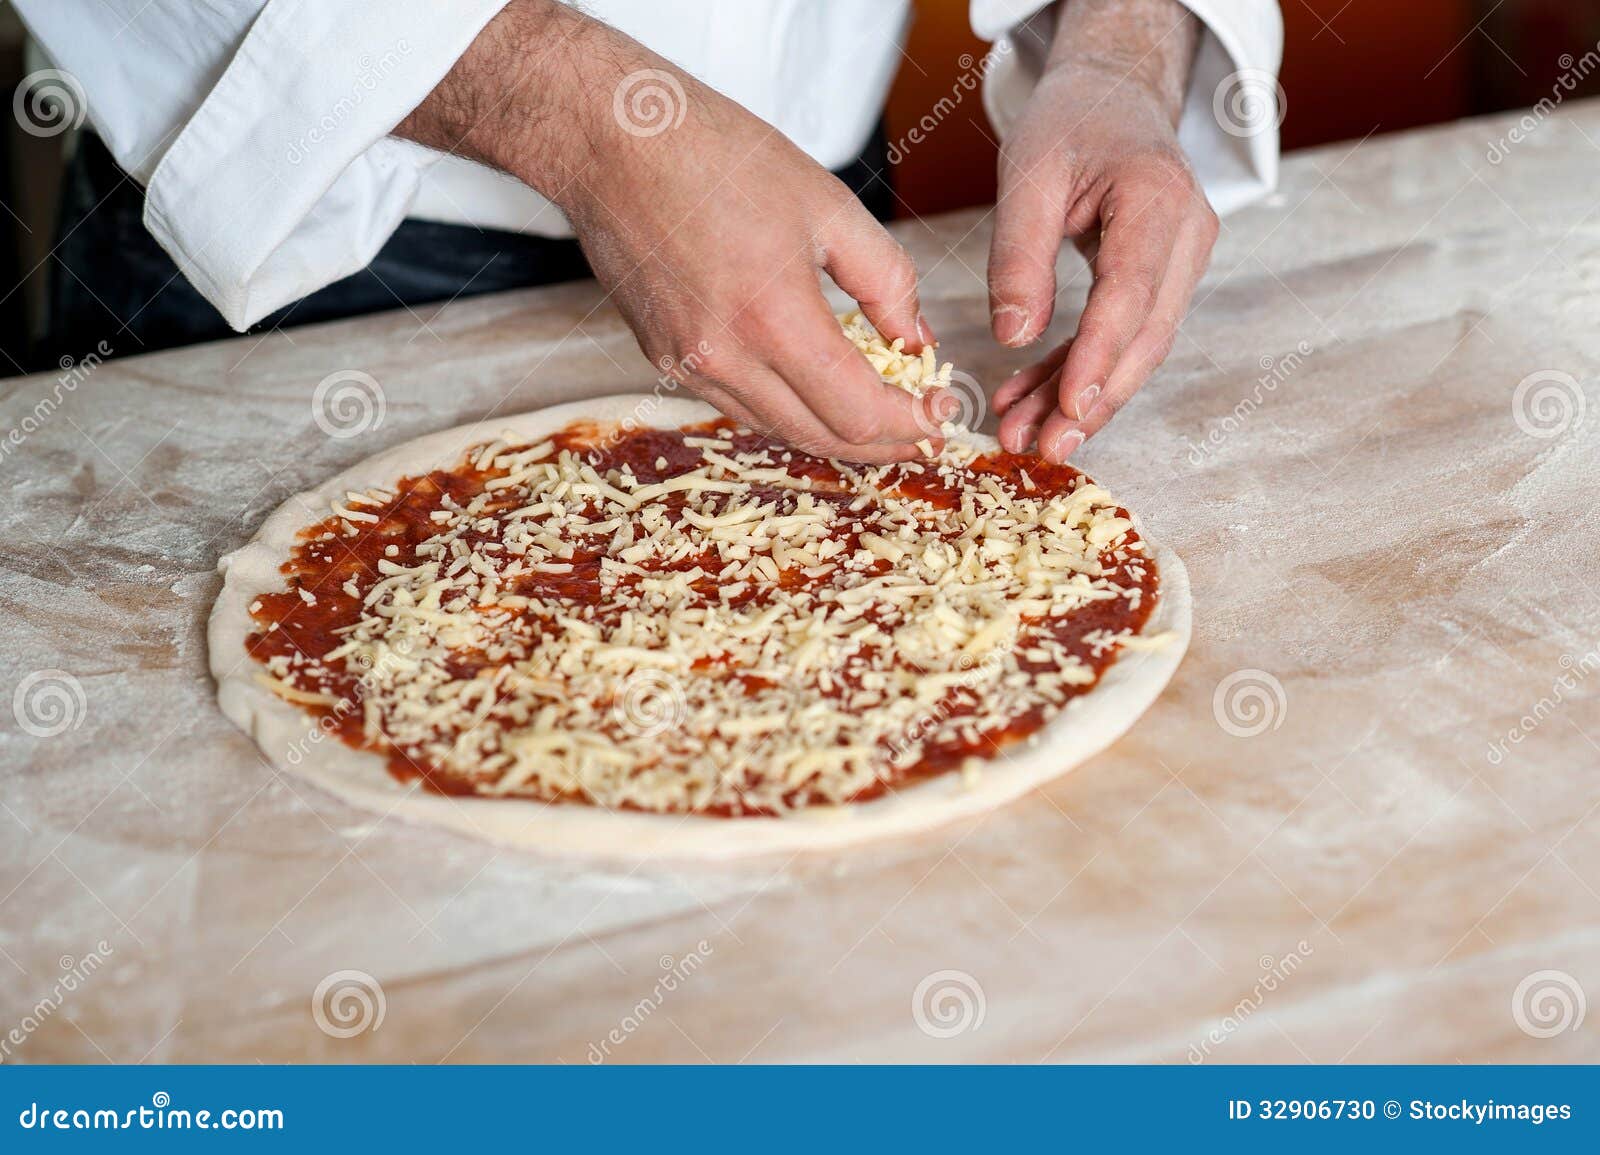 тесто на пиццу андрей шеф фото 83